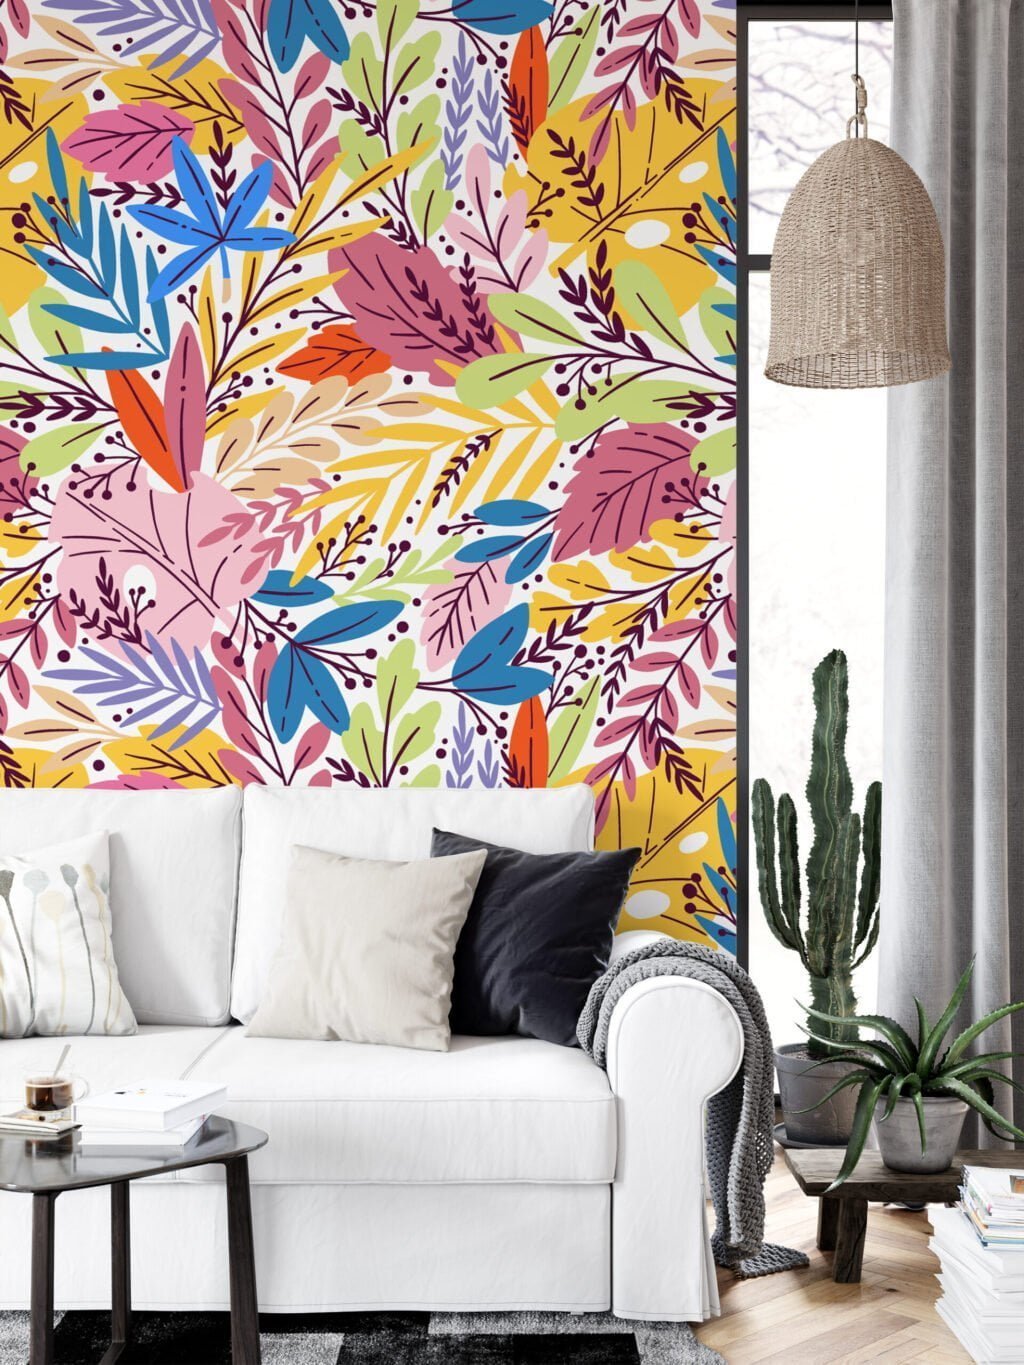 Renkli Yapraklar Duvar Kağıdı, Rengarenk Yaprak Desenli 3D Duvar Kağıdı Çiçekli Duvar Kağıtları 6